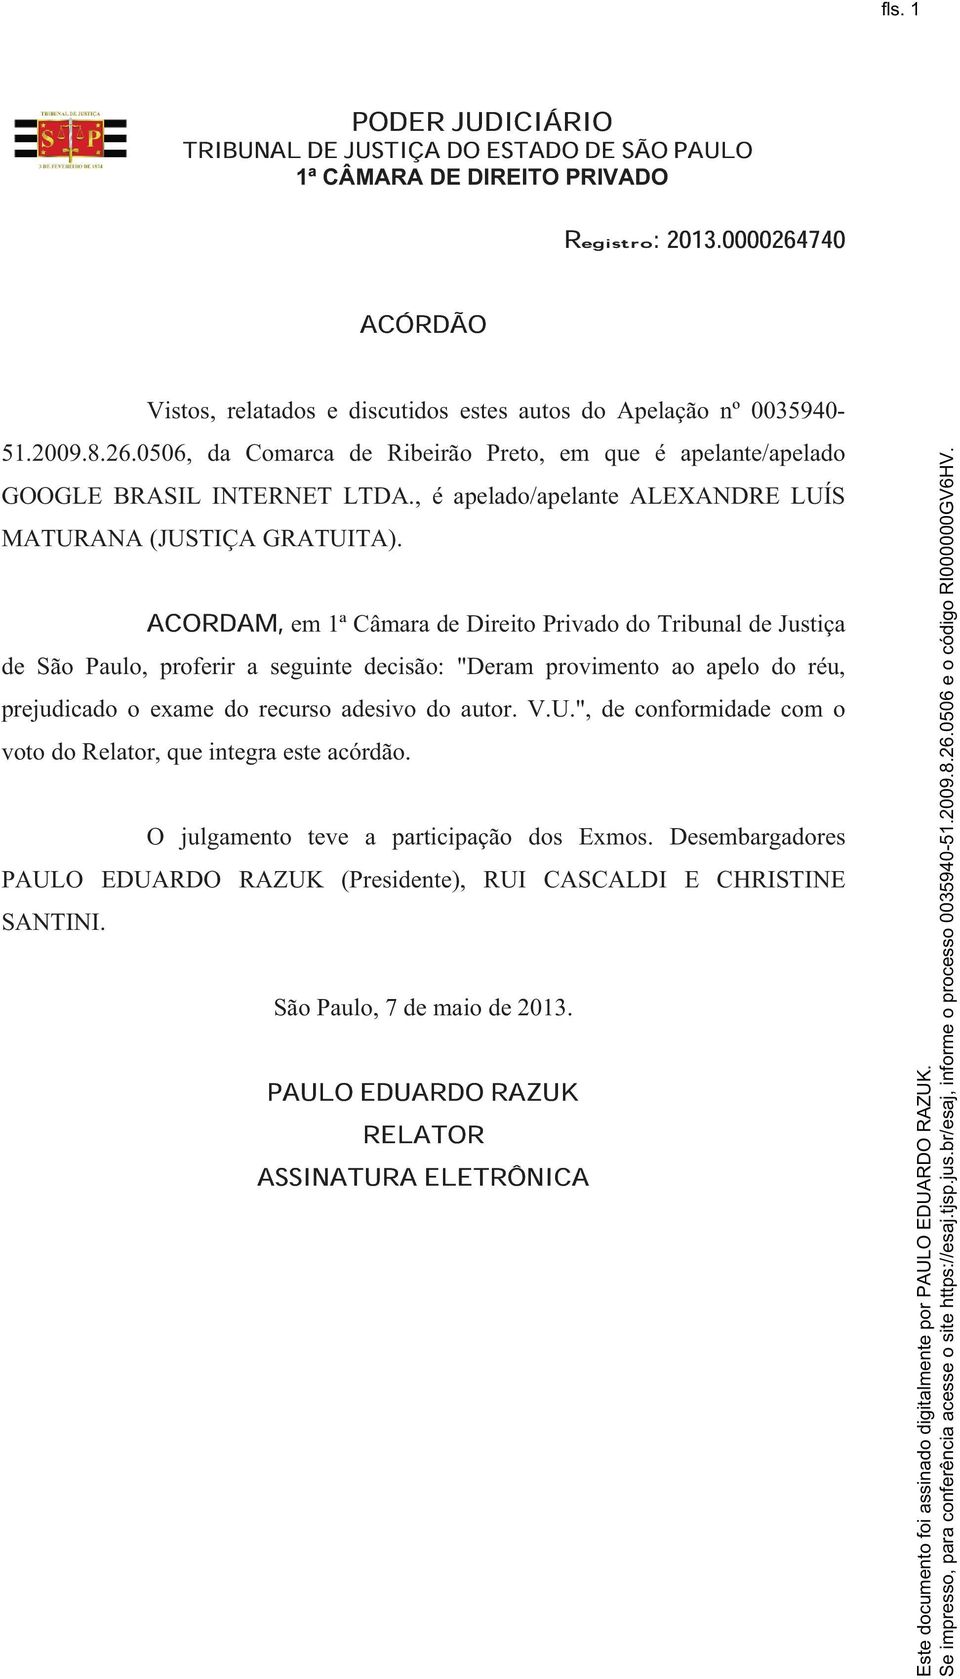 ACORDAM, em 1ª Câmara de Direito Privado do Tribunal de Justiça de São Paulo, proferir a seguinte decisão: "Deram provimento ao apelo do réu, prejudicado o exame do recurso adesivo do